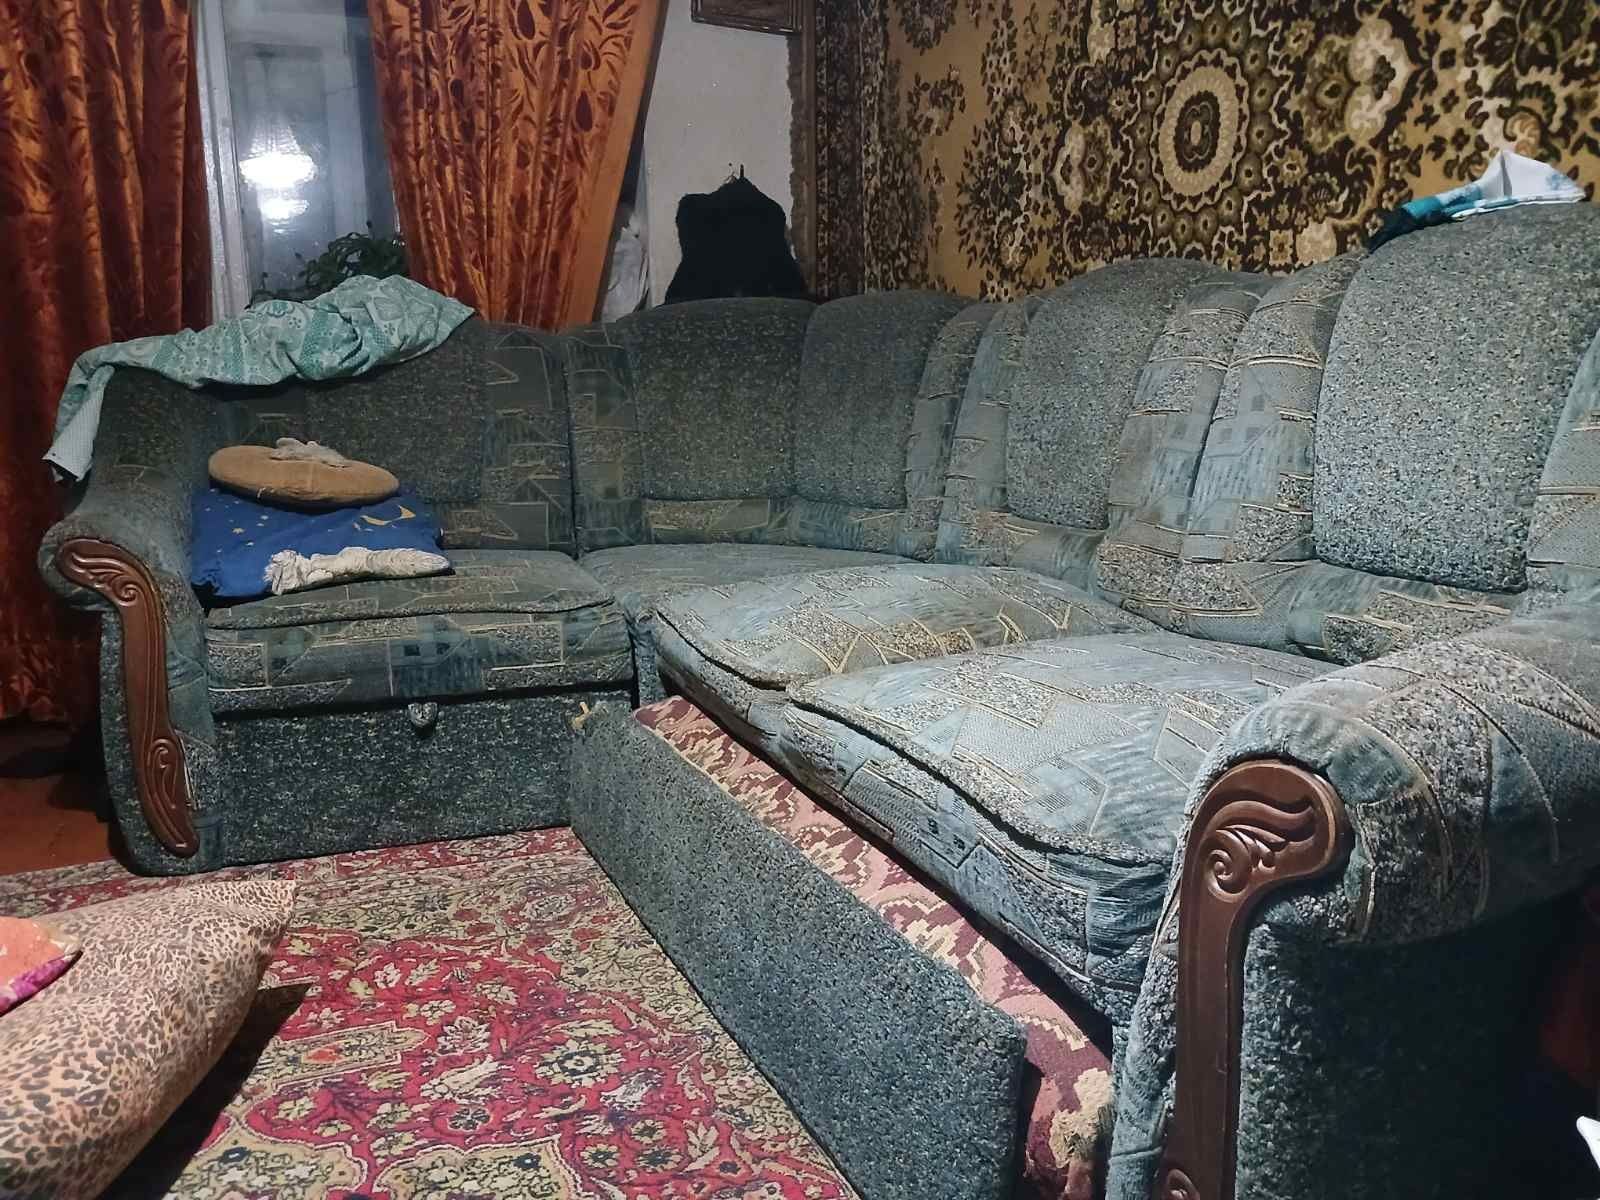 Мягкий угловой диван